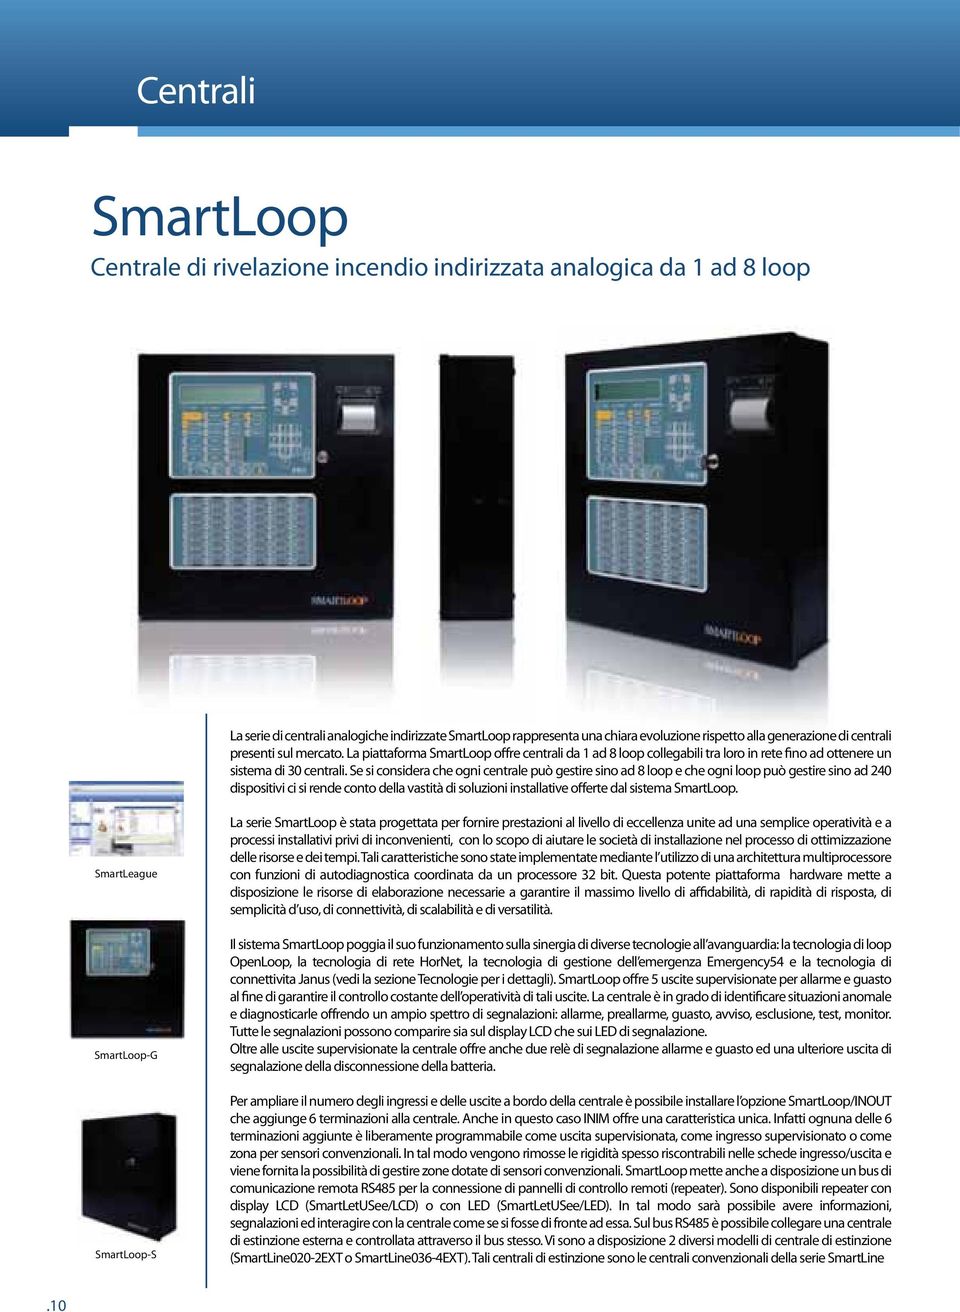 La piattaforma SmartLoop offre centrali da 1 ad 8 loop collegabili tra loro in rete fino ad ottenere un dispositivi ci si rende conto della vastità di soluzioni installative offerte dal sistema